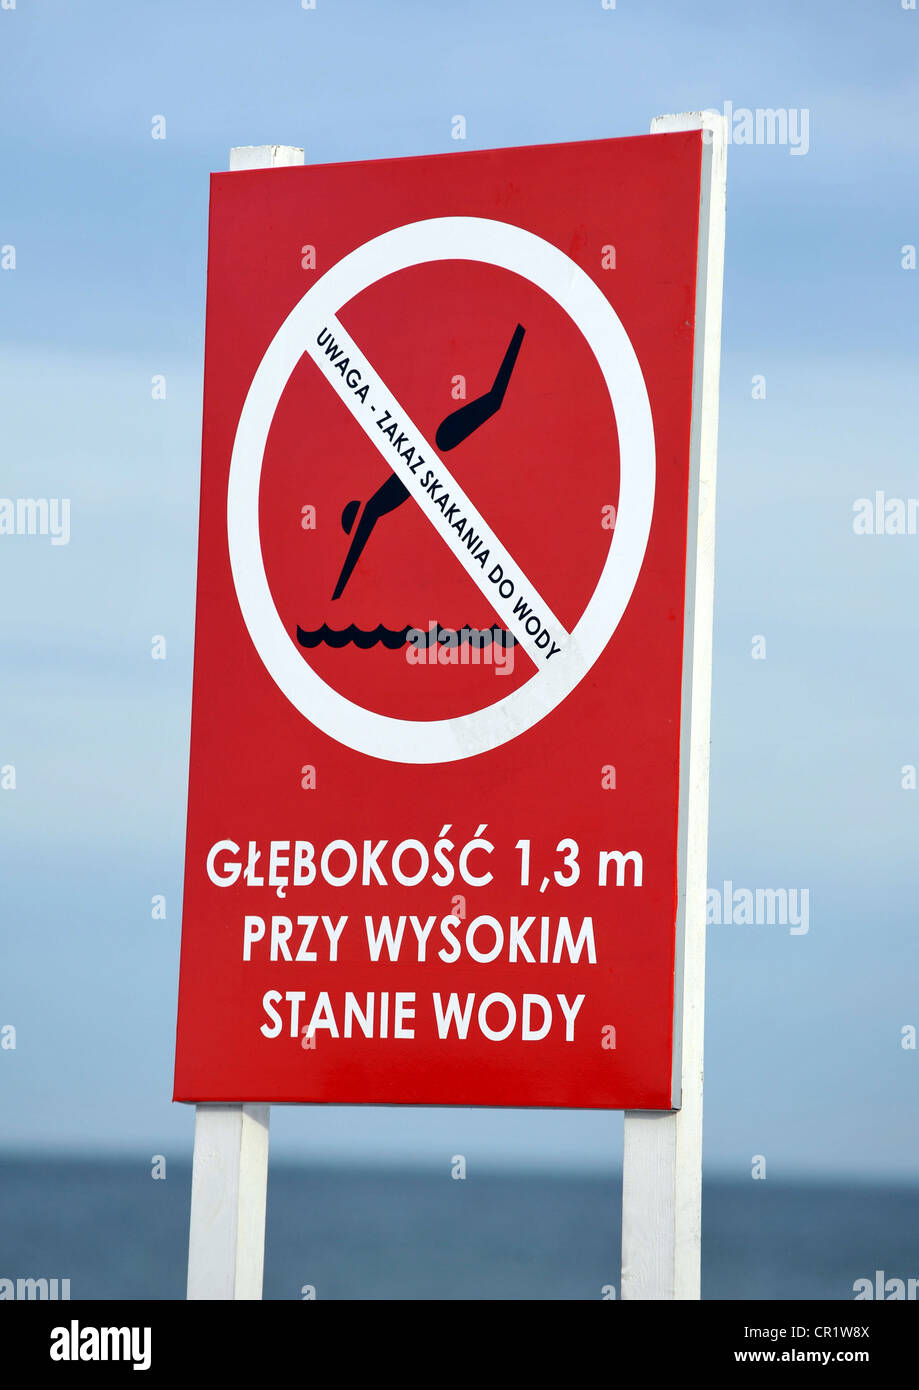 Aucun signe de plongée. La principale de Sopot beach resort à côté de Gdansk, Pologne Banque D'Images